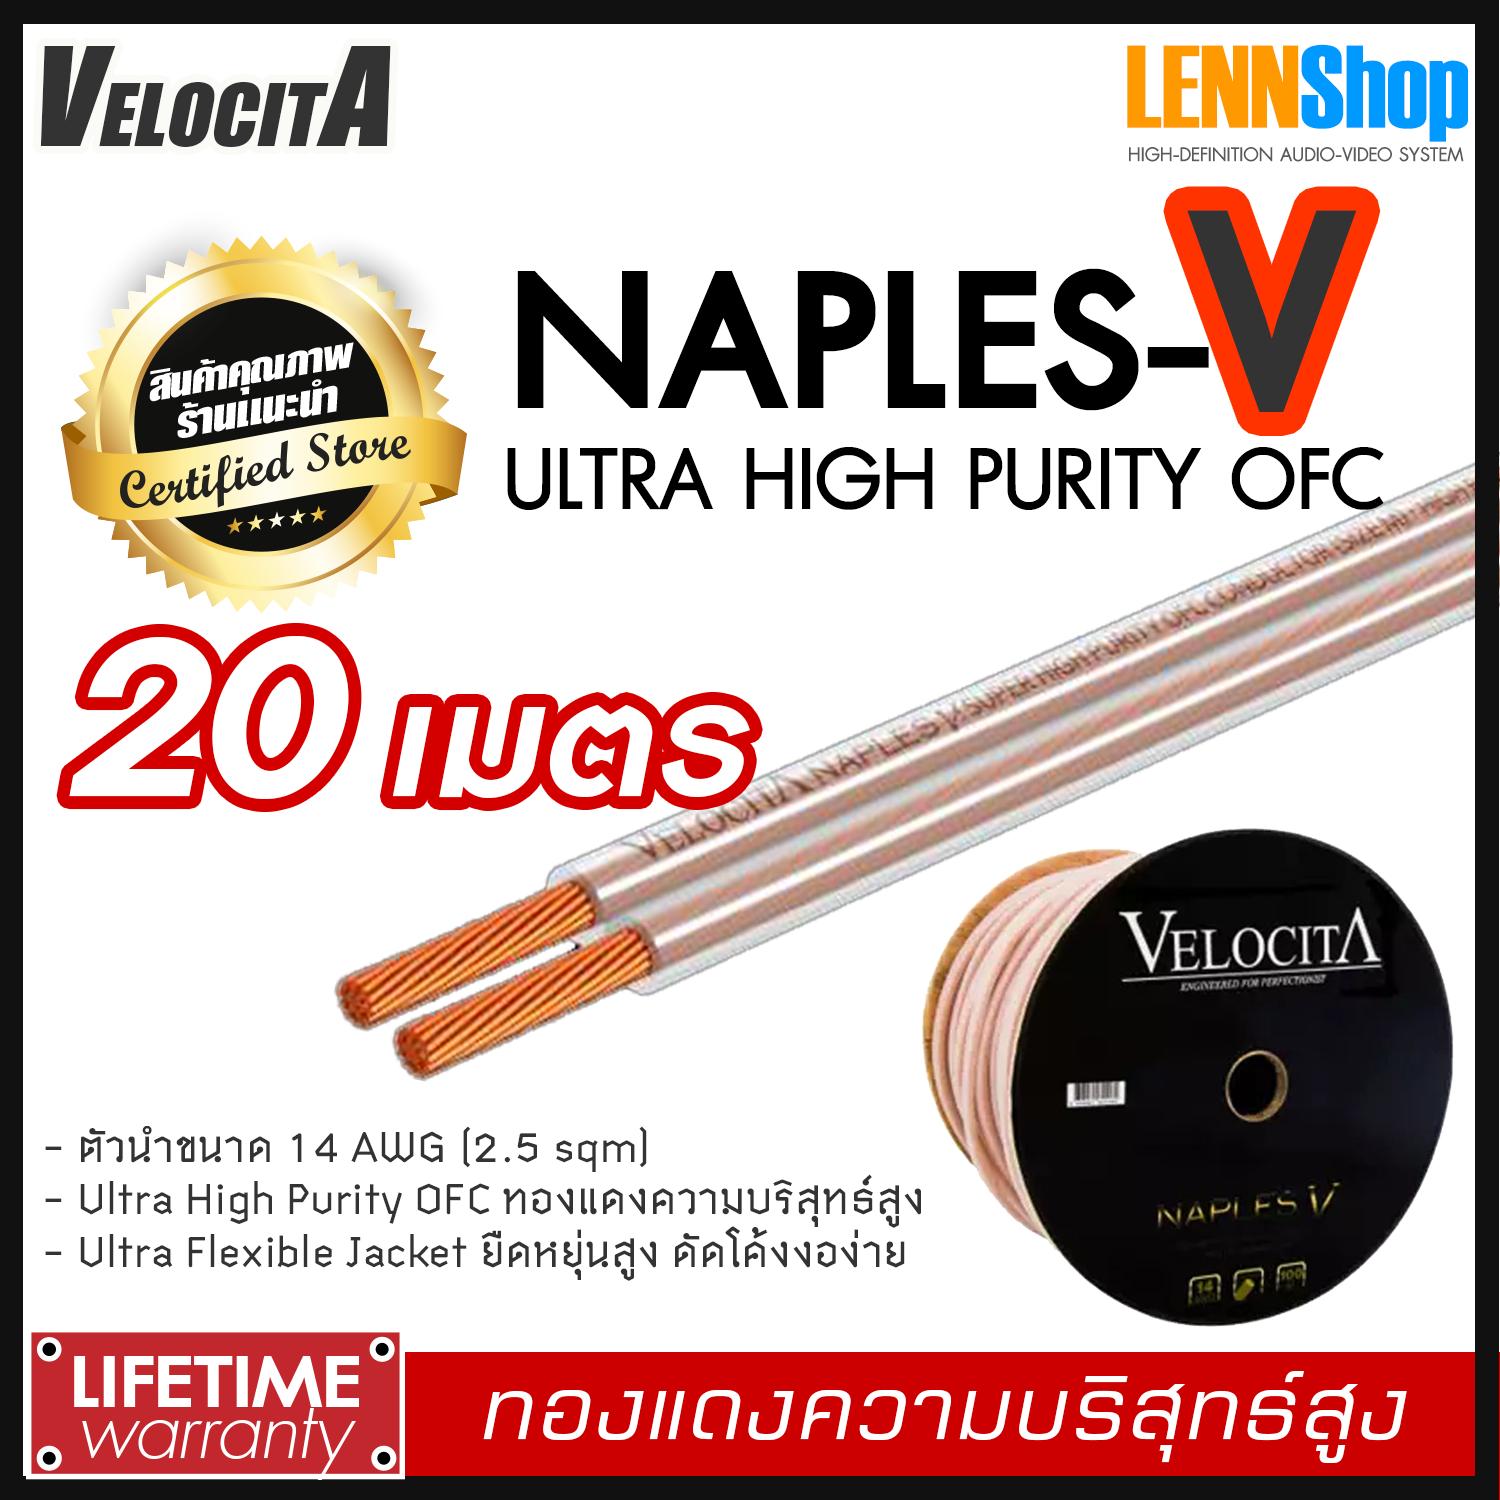 VELOCITA : NAPLES V สายลำโพง Ultra High Purity OFC ความบริสุทธ์สูง ความยาว ตั้งแต่ 1 - 100 เมตร เลือกได้หลายขนาด สินค้าของแท้ 100% จากตัวแทนจำหน่ายอย่างเป็นทางการ จำหน่ายโดย LENNSHOP / Velocita Naple V / naple V สี 20m สี 20m